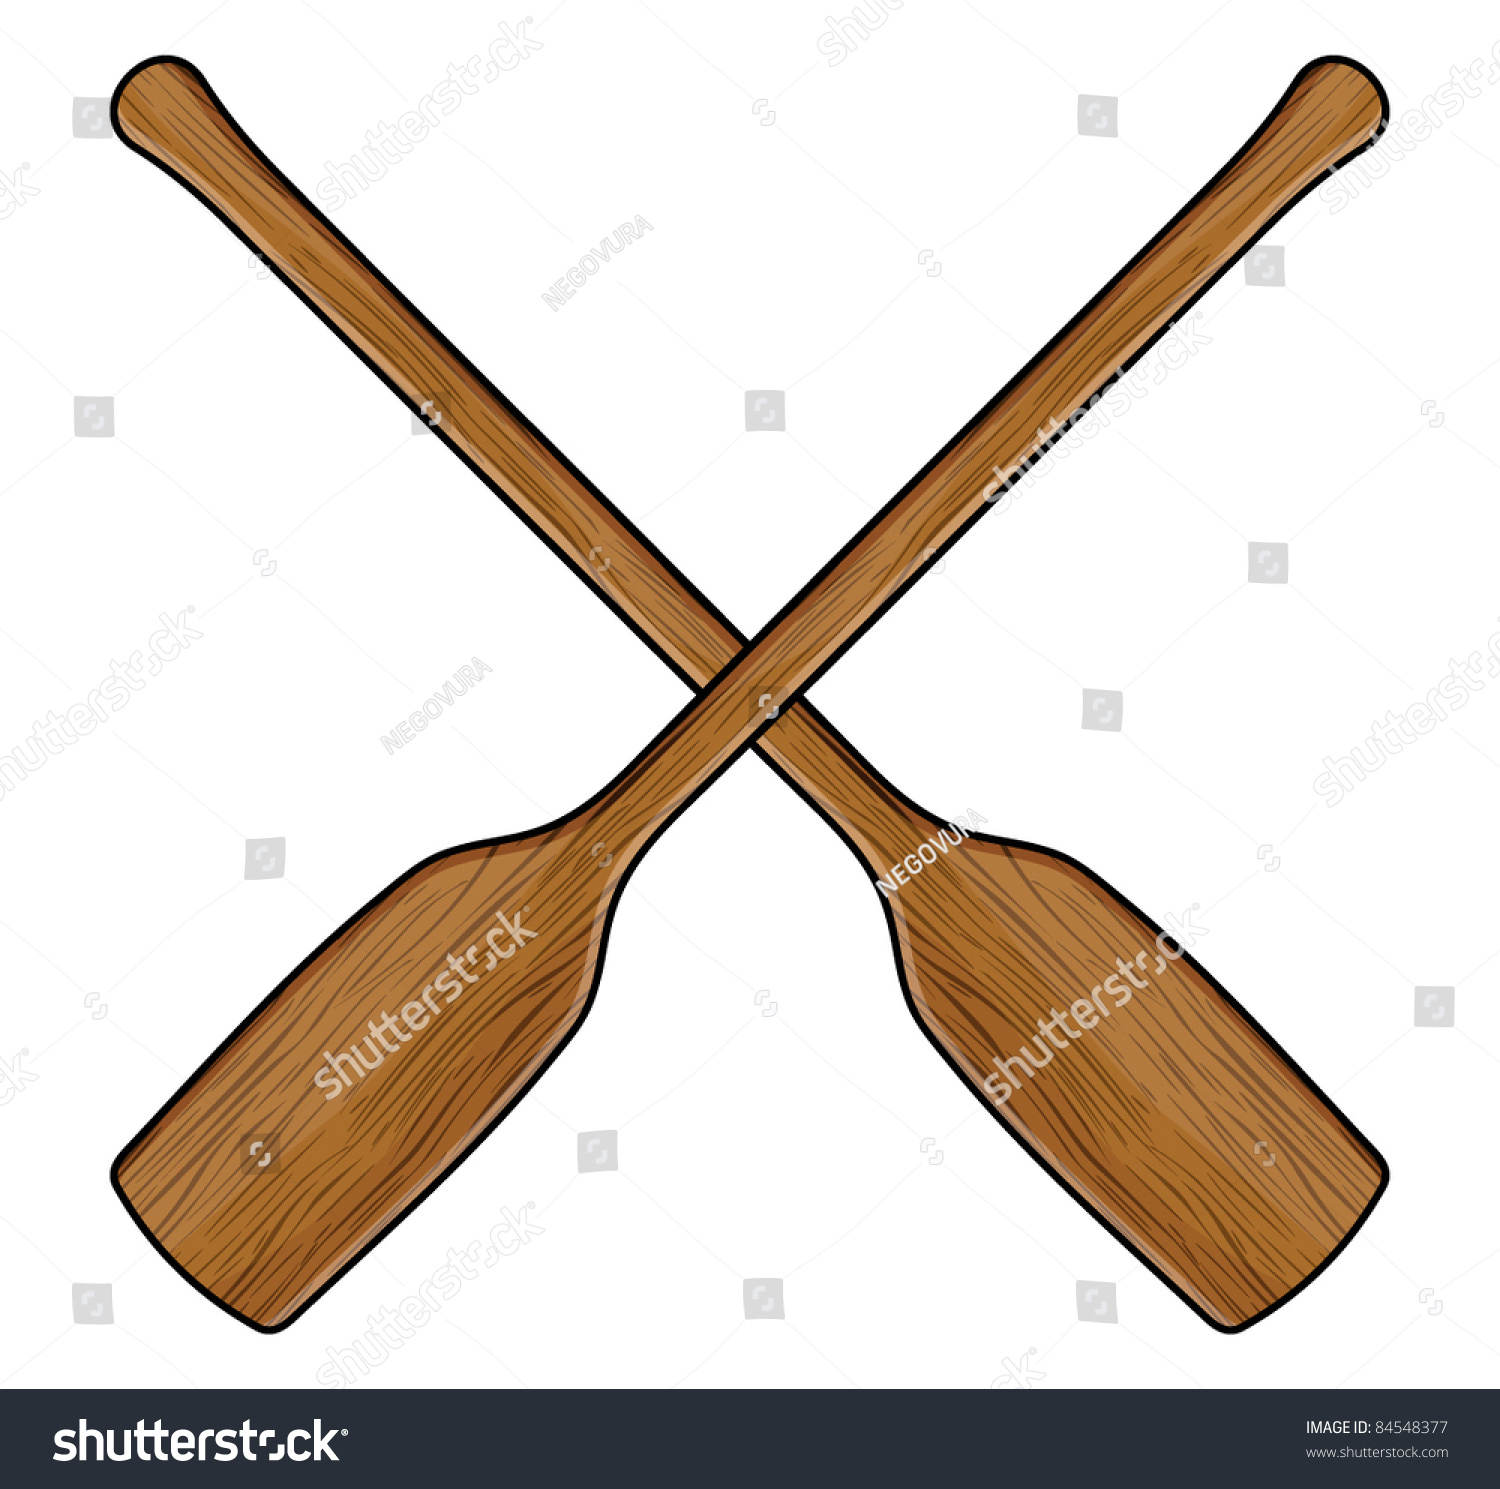 Wooden Canoe Paddle Stock Vector 84548377 - Shutterstock